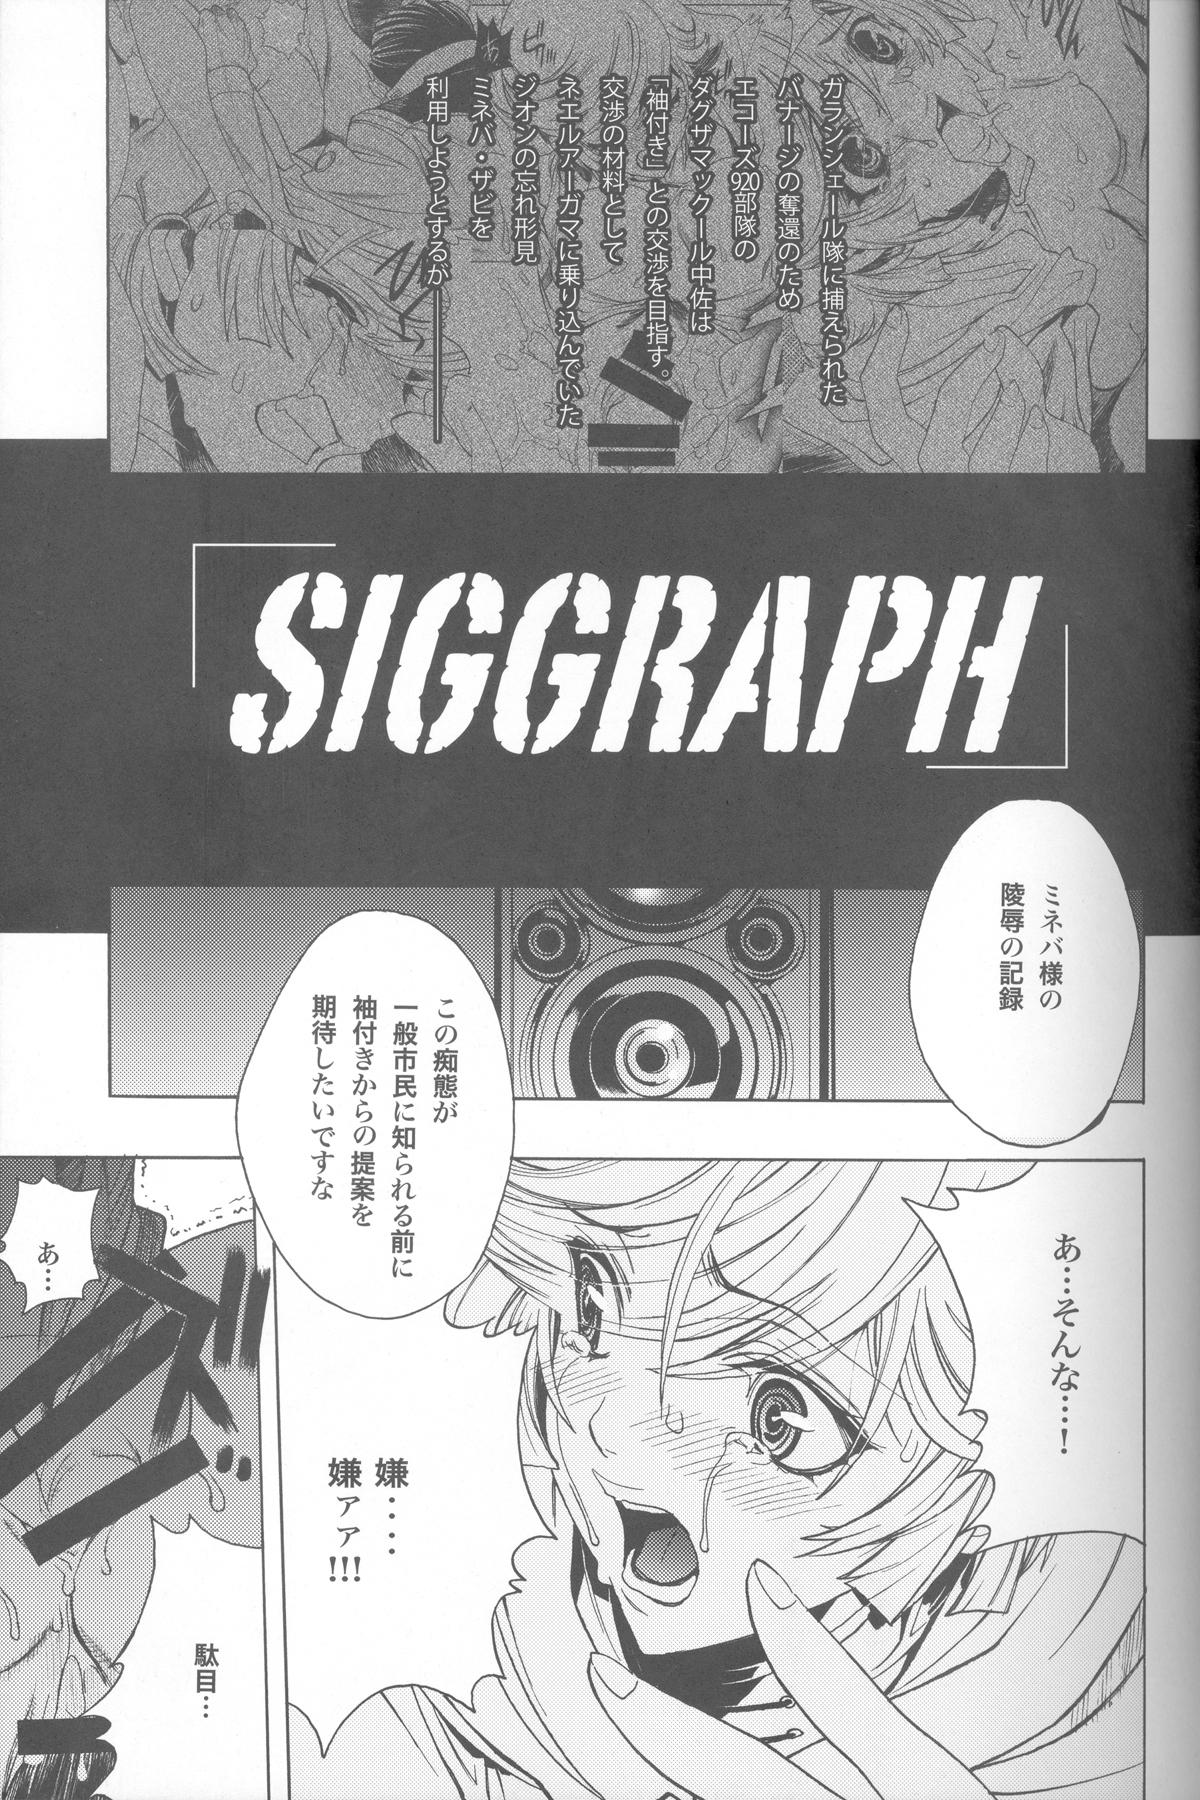 Lezbi SIGGRAPH - Gundam unicorn Jizz - Page 4